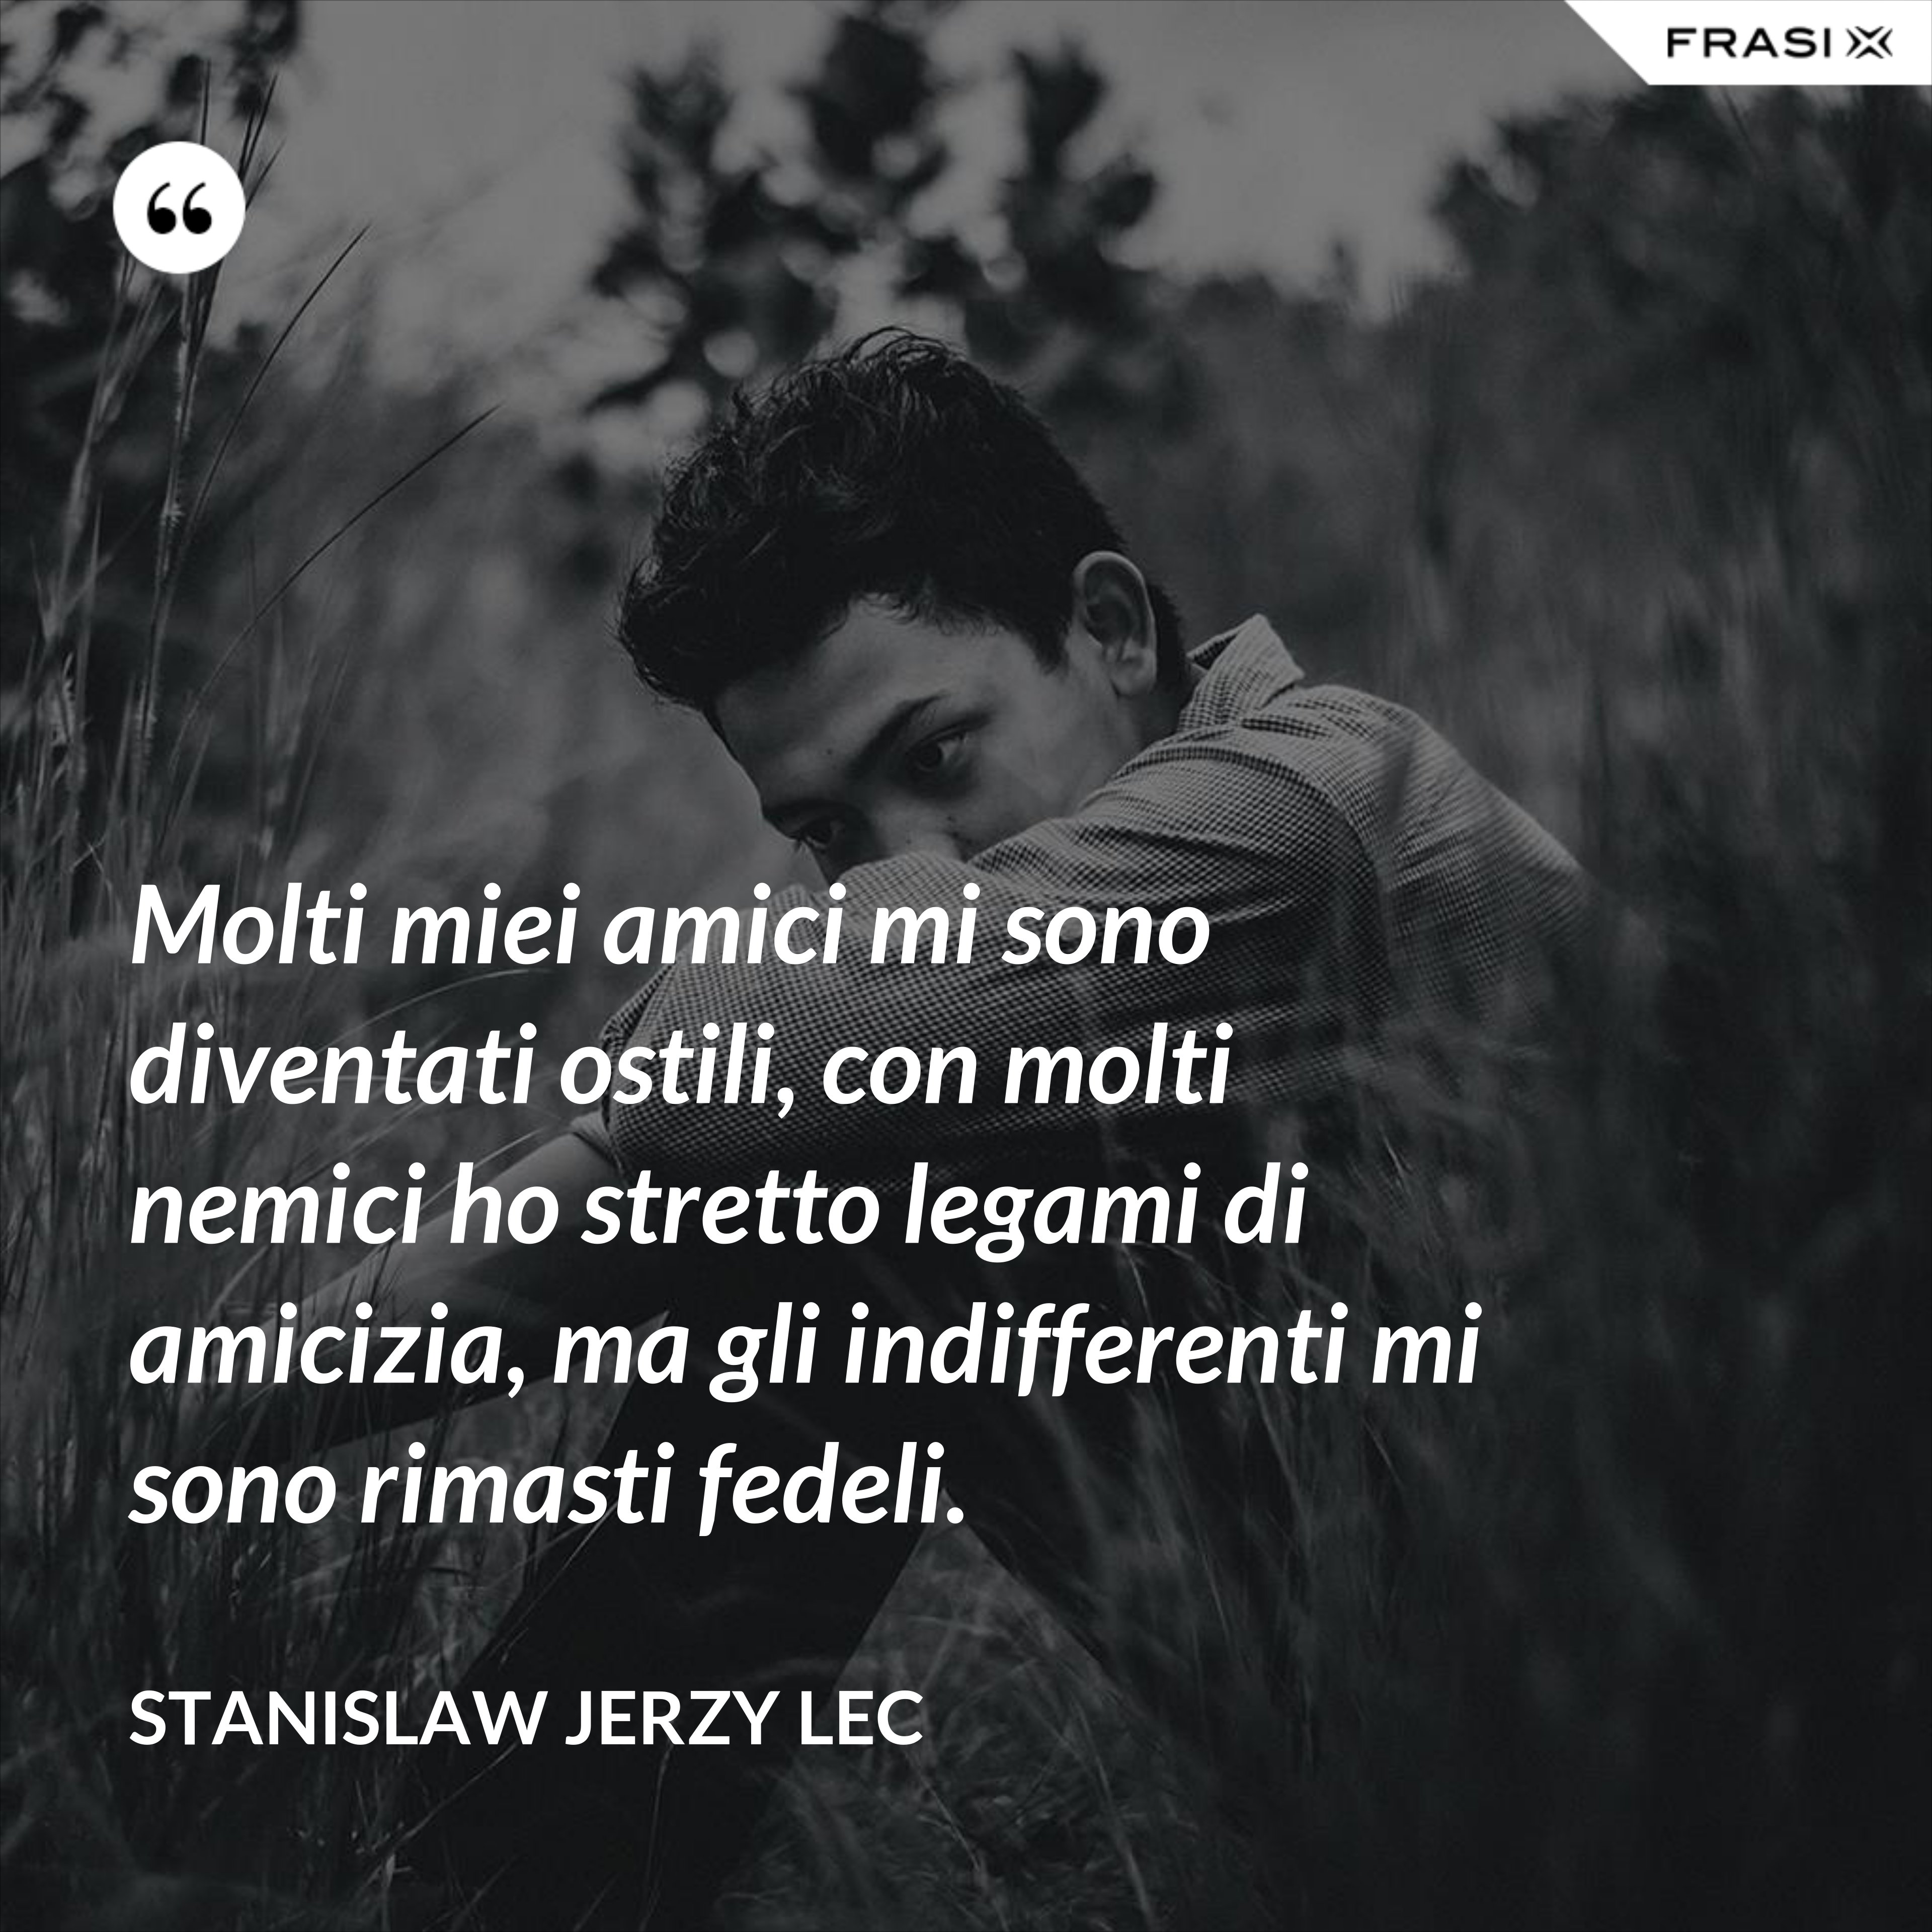 Molti miei amici mi sono diventati ostili, con molti nemici ho stretto legami di amicizia, ma gli indifferenti mi sono rimasti fedeli. - Stanislaw Jerzy Lec